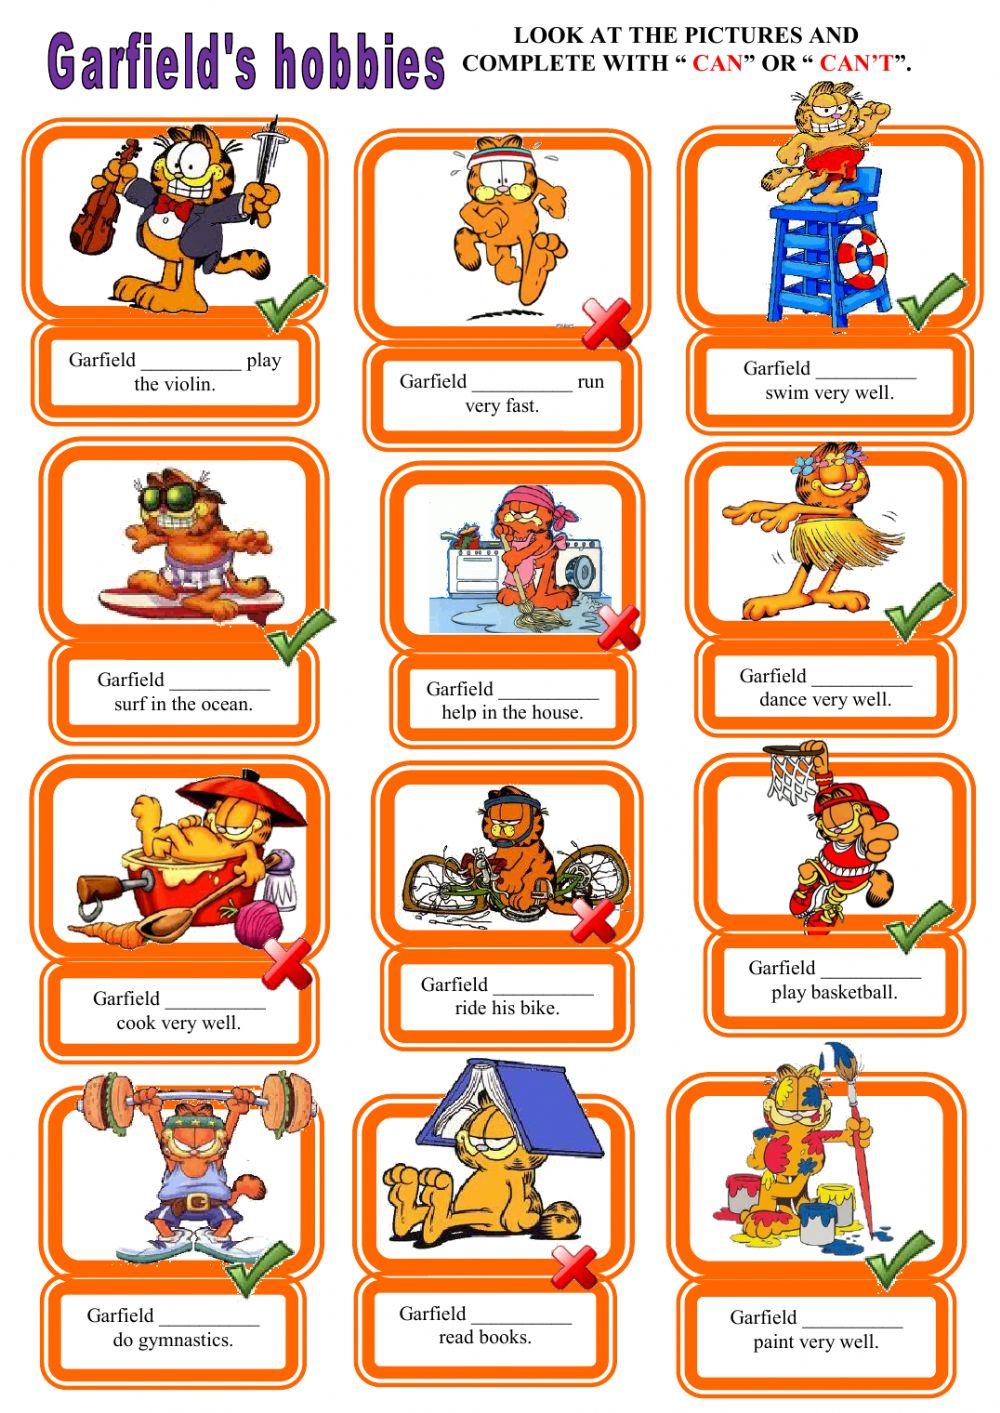 Modal verbs - What can Garfield do?